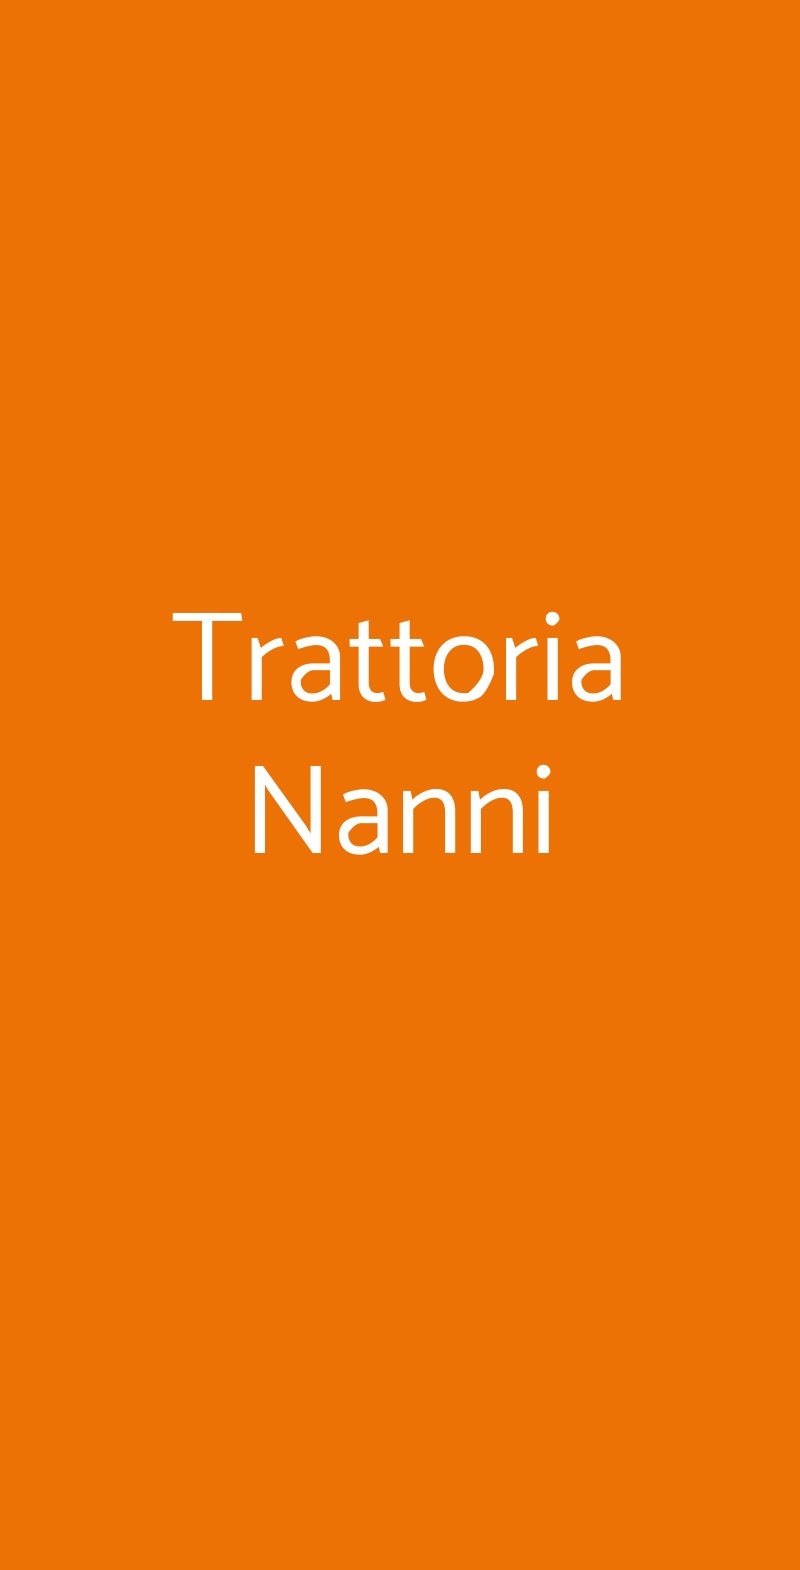 Trattoria Nanni Napoli menù 1 pagina